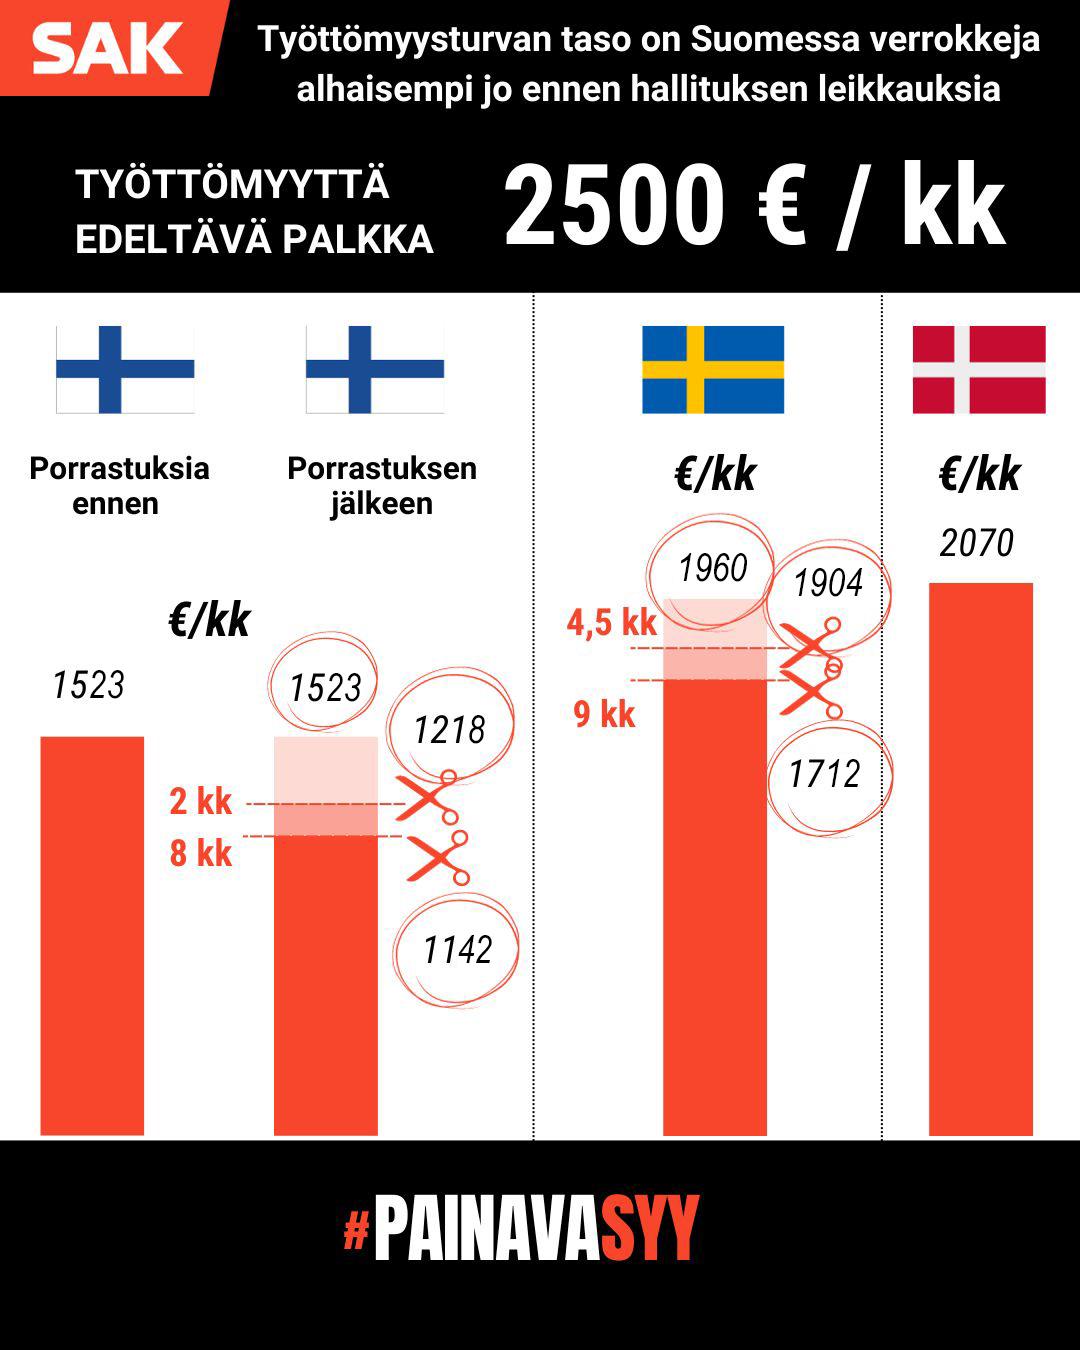 Kuvan kaaviosta ilmenee, että työttömyysturvan taso on Suomessa pienempi kuin Ruotsissa tai Tanskassa jo ennen Orpon-Purran hallituksen suunnittelemia leikkauksia, kun työntekijän työttömyyttä edeltävä palkka on ollut 2500 euroa kuukaudessa.